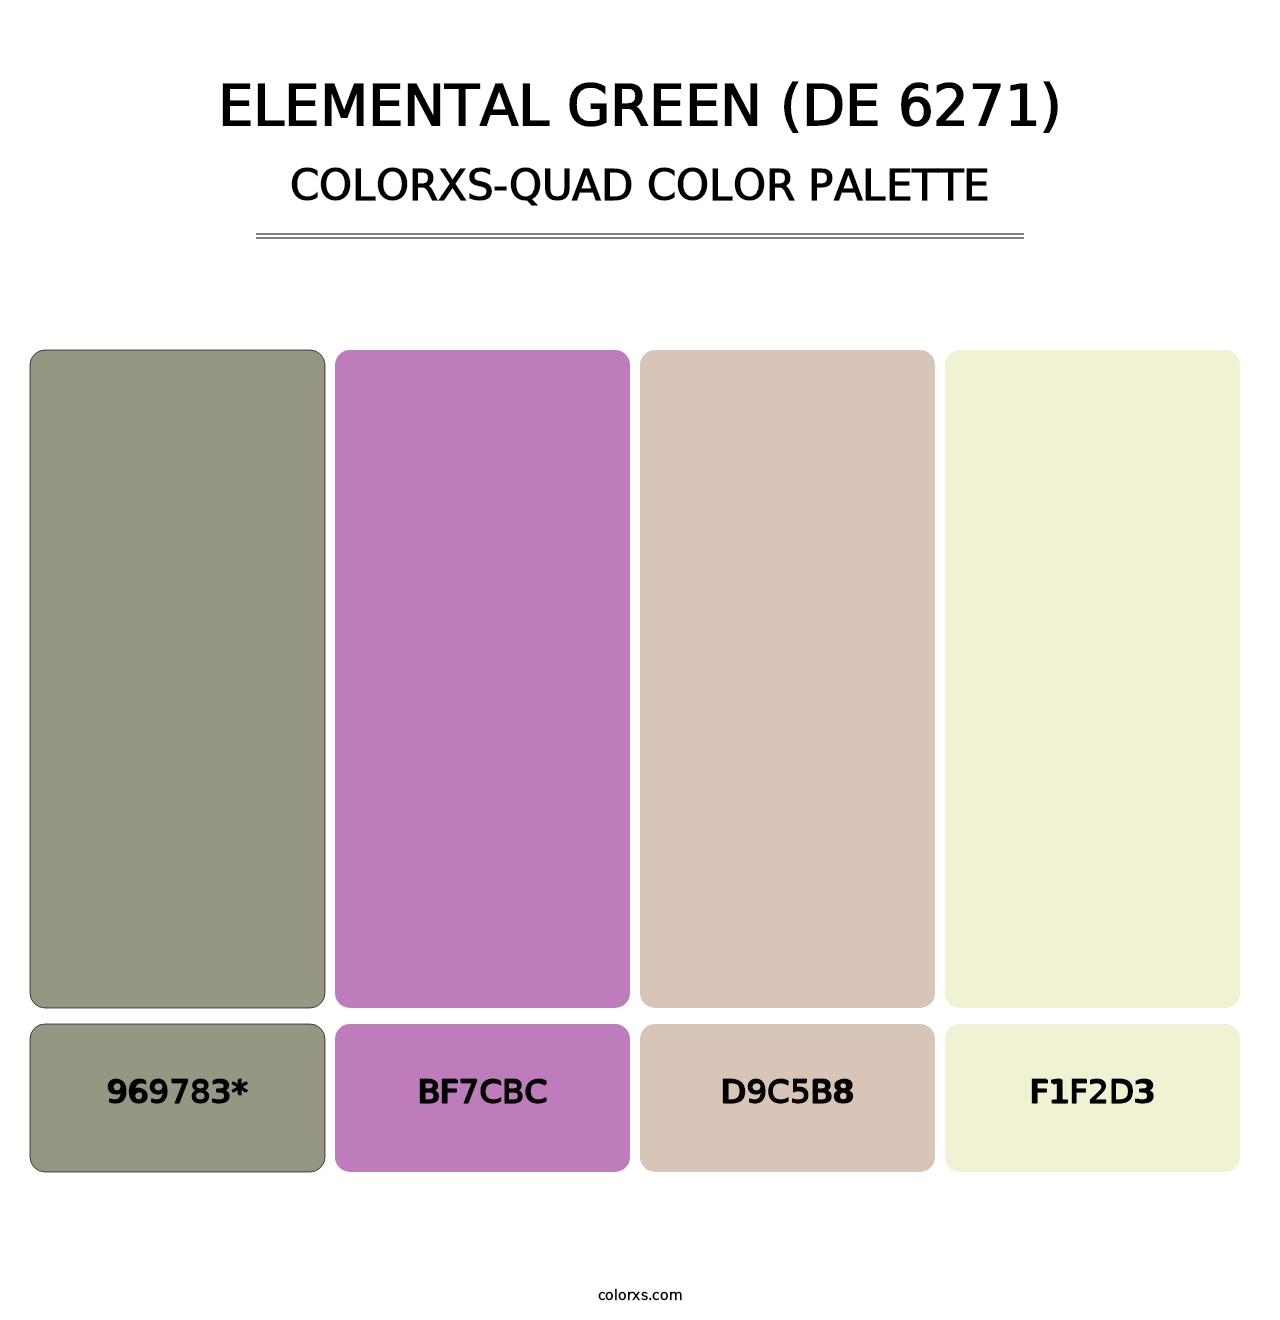 Elemental Green (DE 6271) - Colorxs Quad Palette